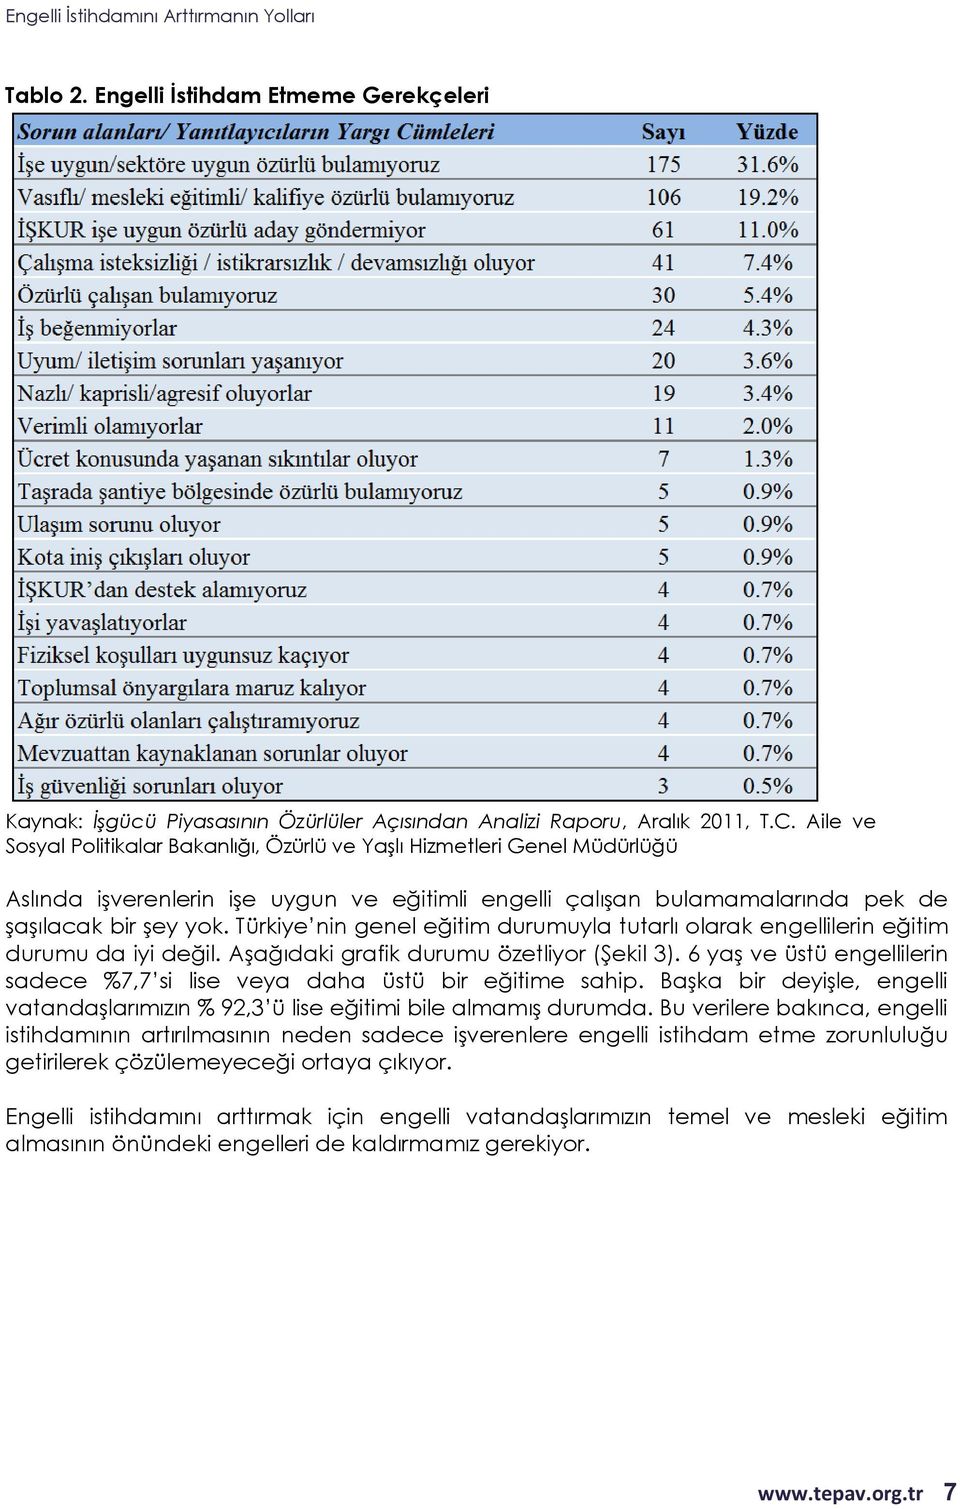 Türkiye nin genel eğitim durumuyla tutarlı olarak engellilerin eğitim durumu da iyi değil. Aşağıdaki grafik durumu özetliyor (Şekil 3).